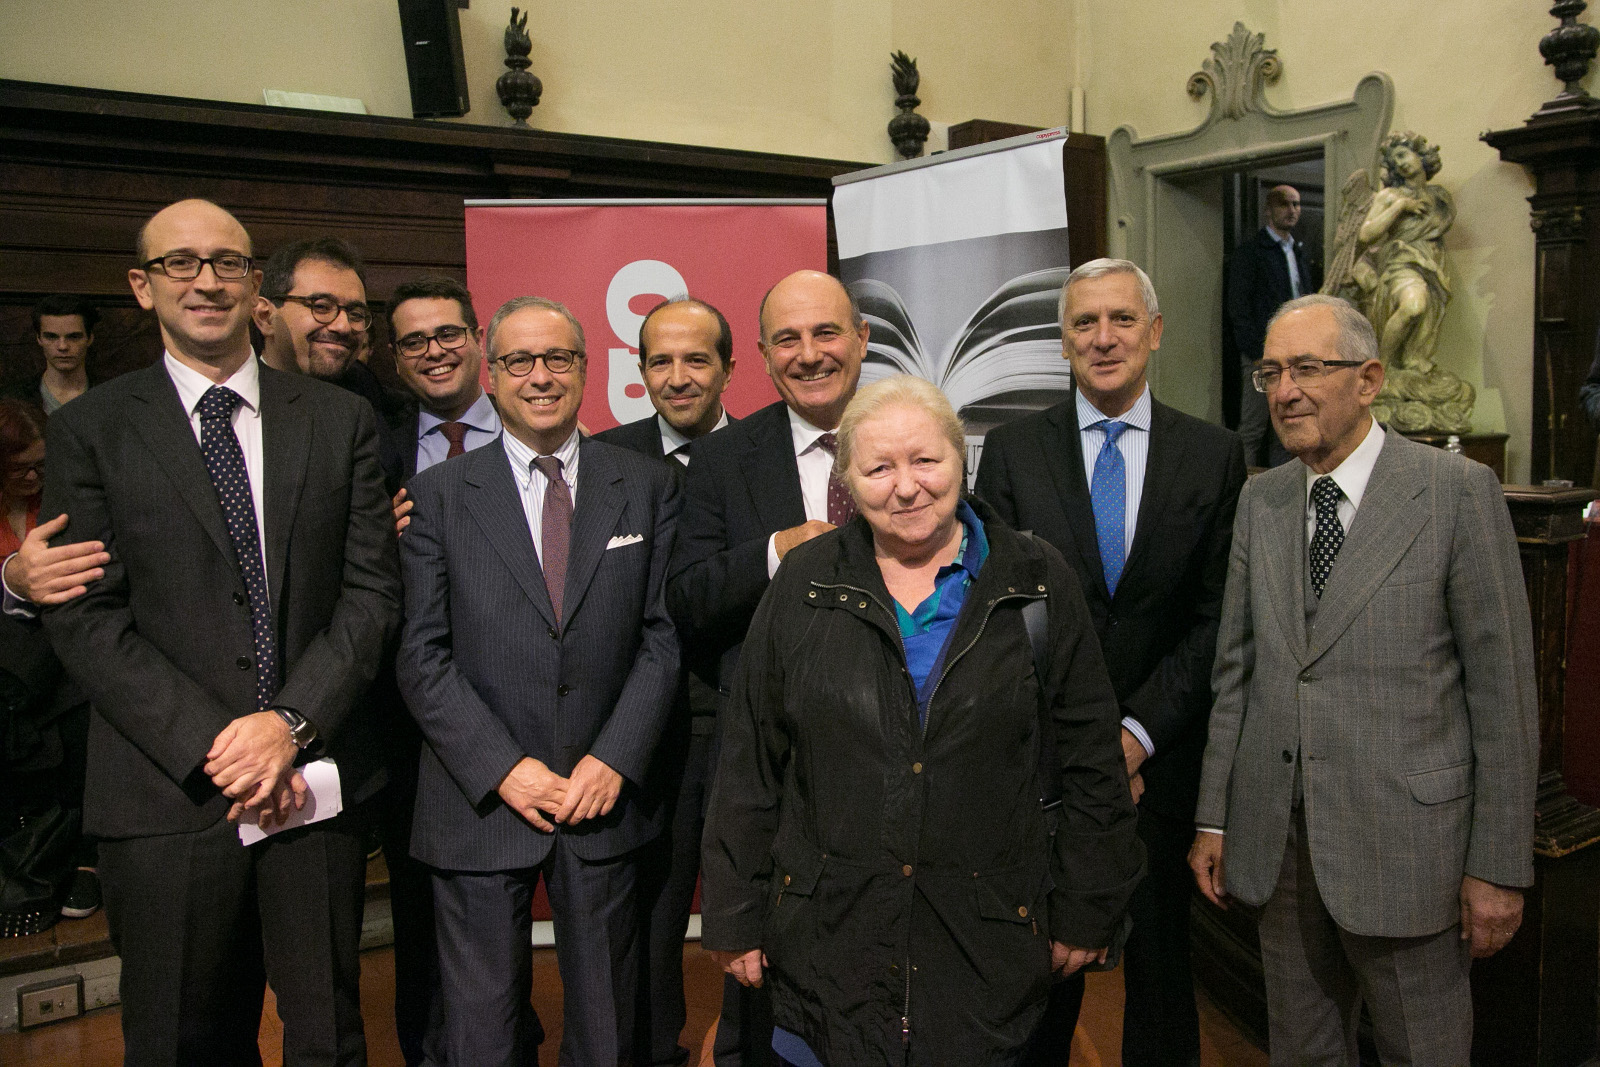 Cinque costituzionalisti a Parma per il referendum - ParmaDaily.it